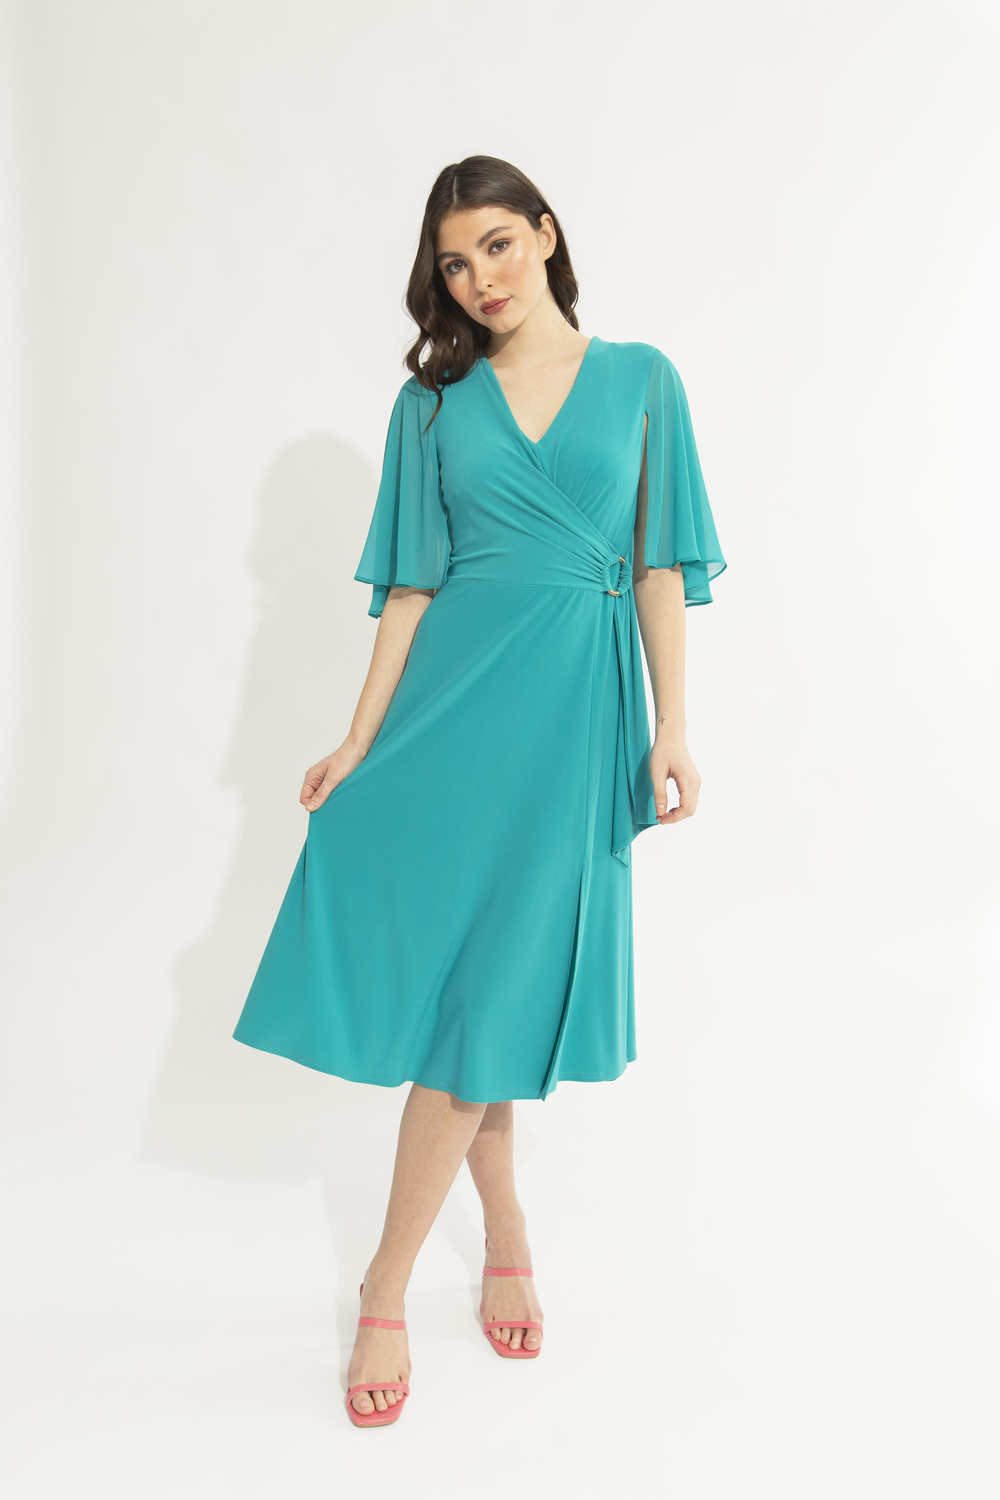 Dual Fabric Ruffled Dress Style 231757. Ocean Blue